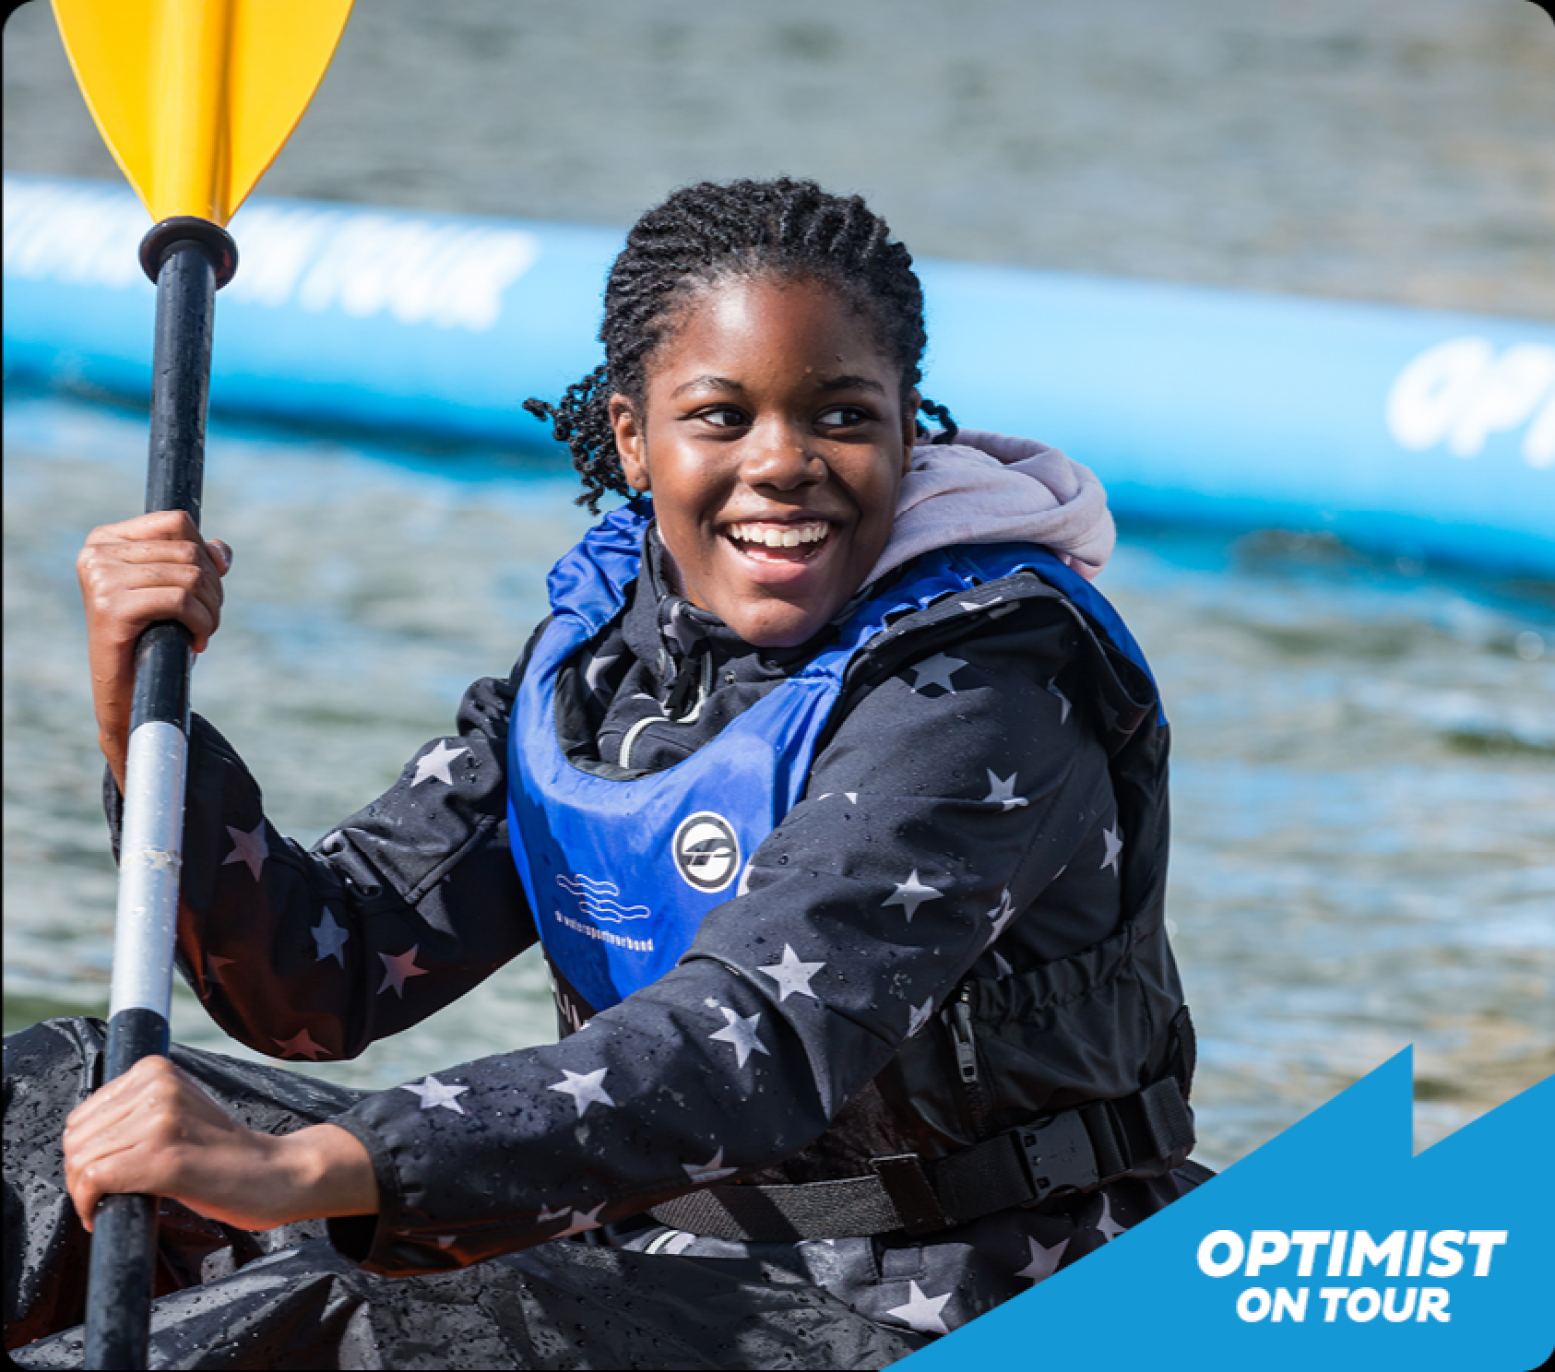 Allerlei workshops voor de kinderen op het water, van kanovaren tot windsurfen! Foto: Optimist on tour, Laurens Morel